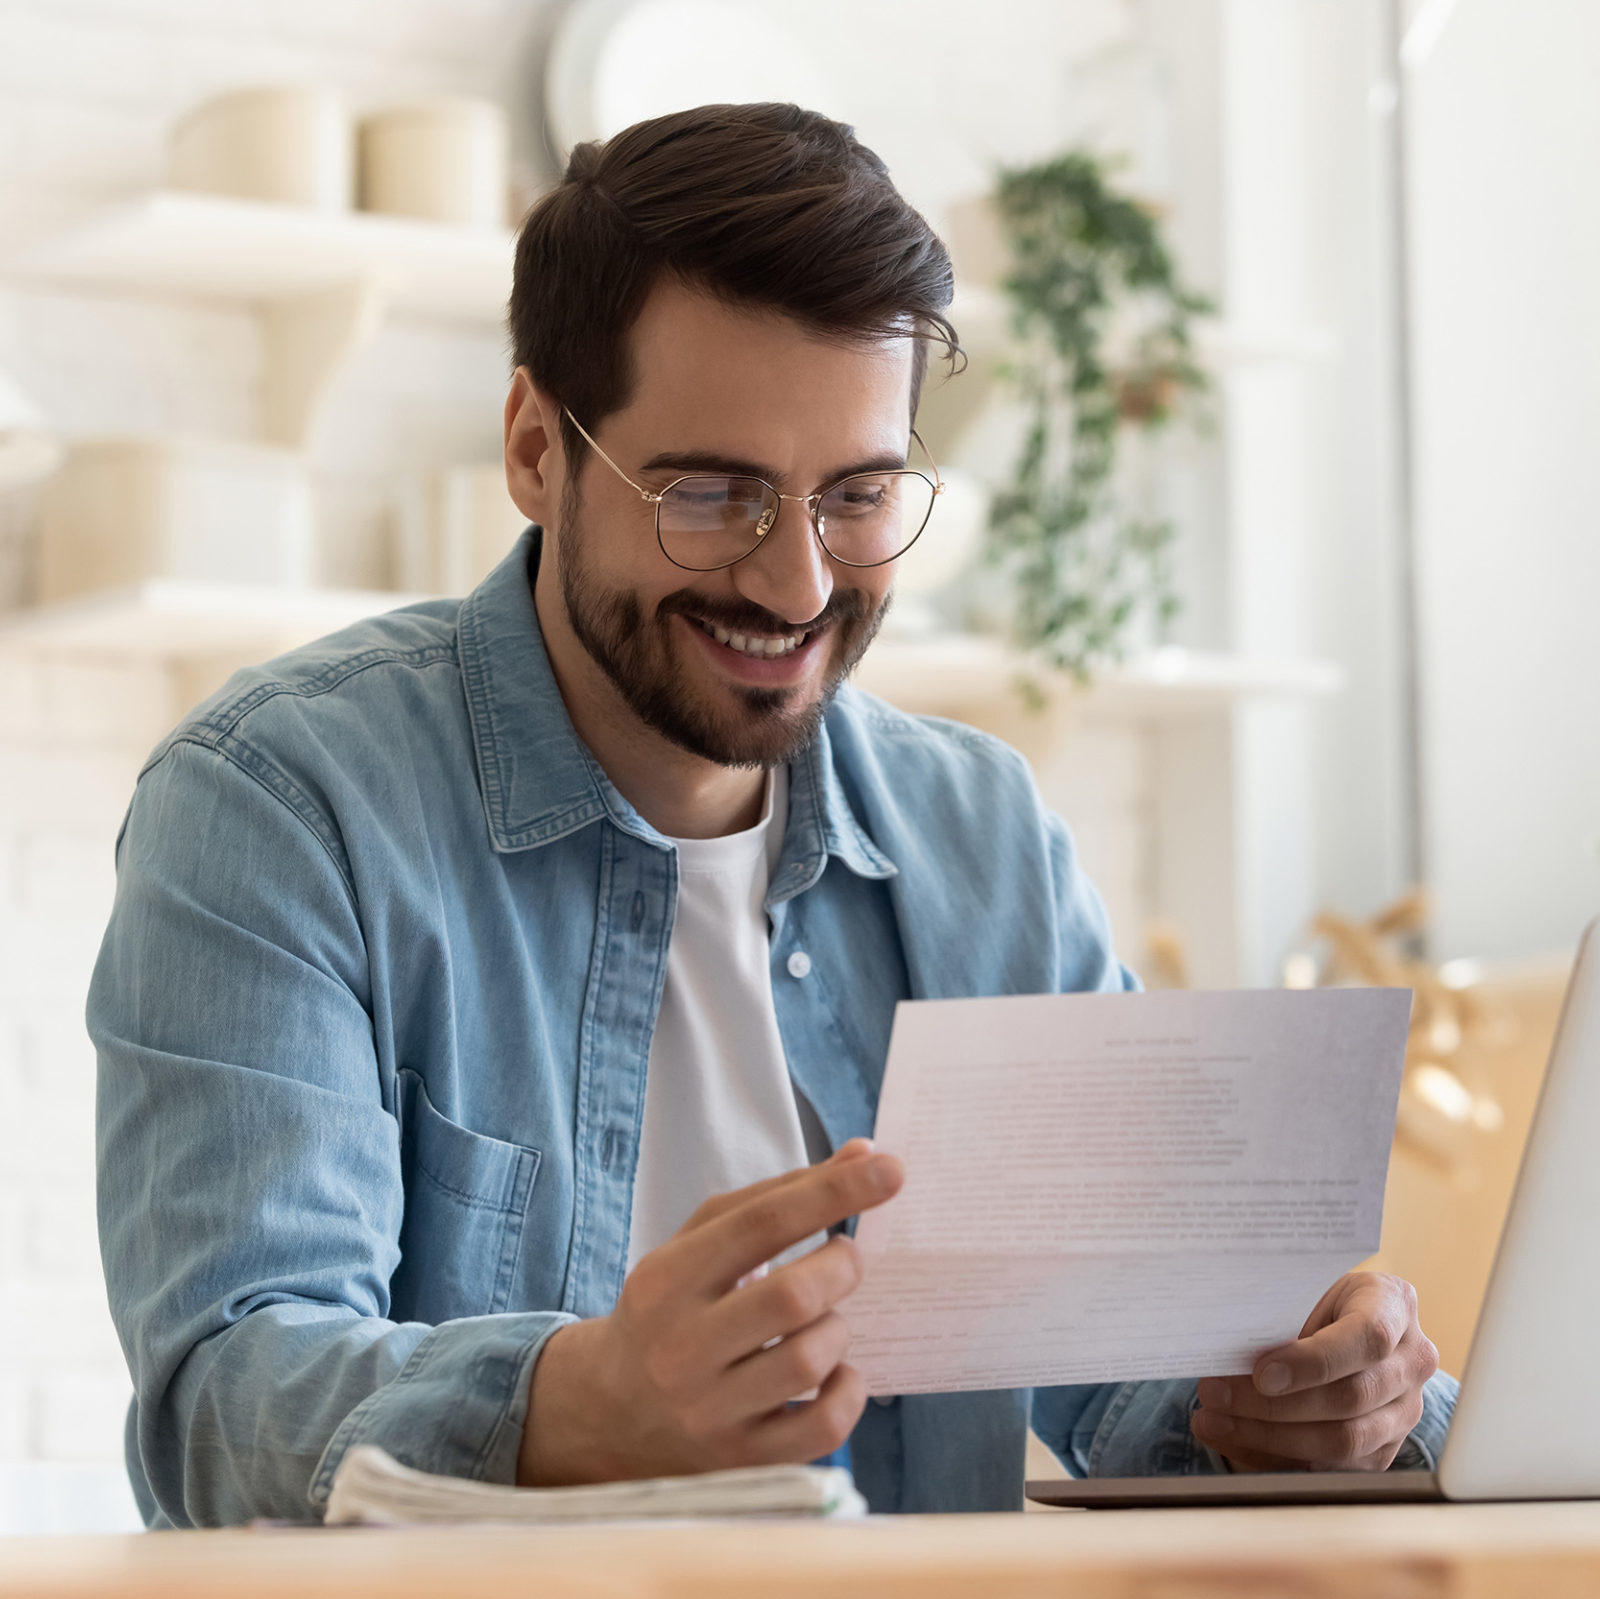 Nebenkostenabrechnung: Mann mit blauem Jeanshemd und weißem Shirt sitzt an einem Holztisch vor einem Laptop und haelt ein Dokument in den Haenden. Er laechelt dabei.